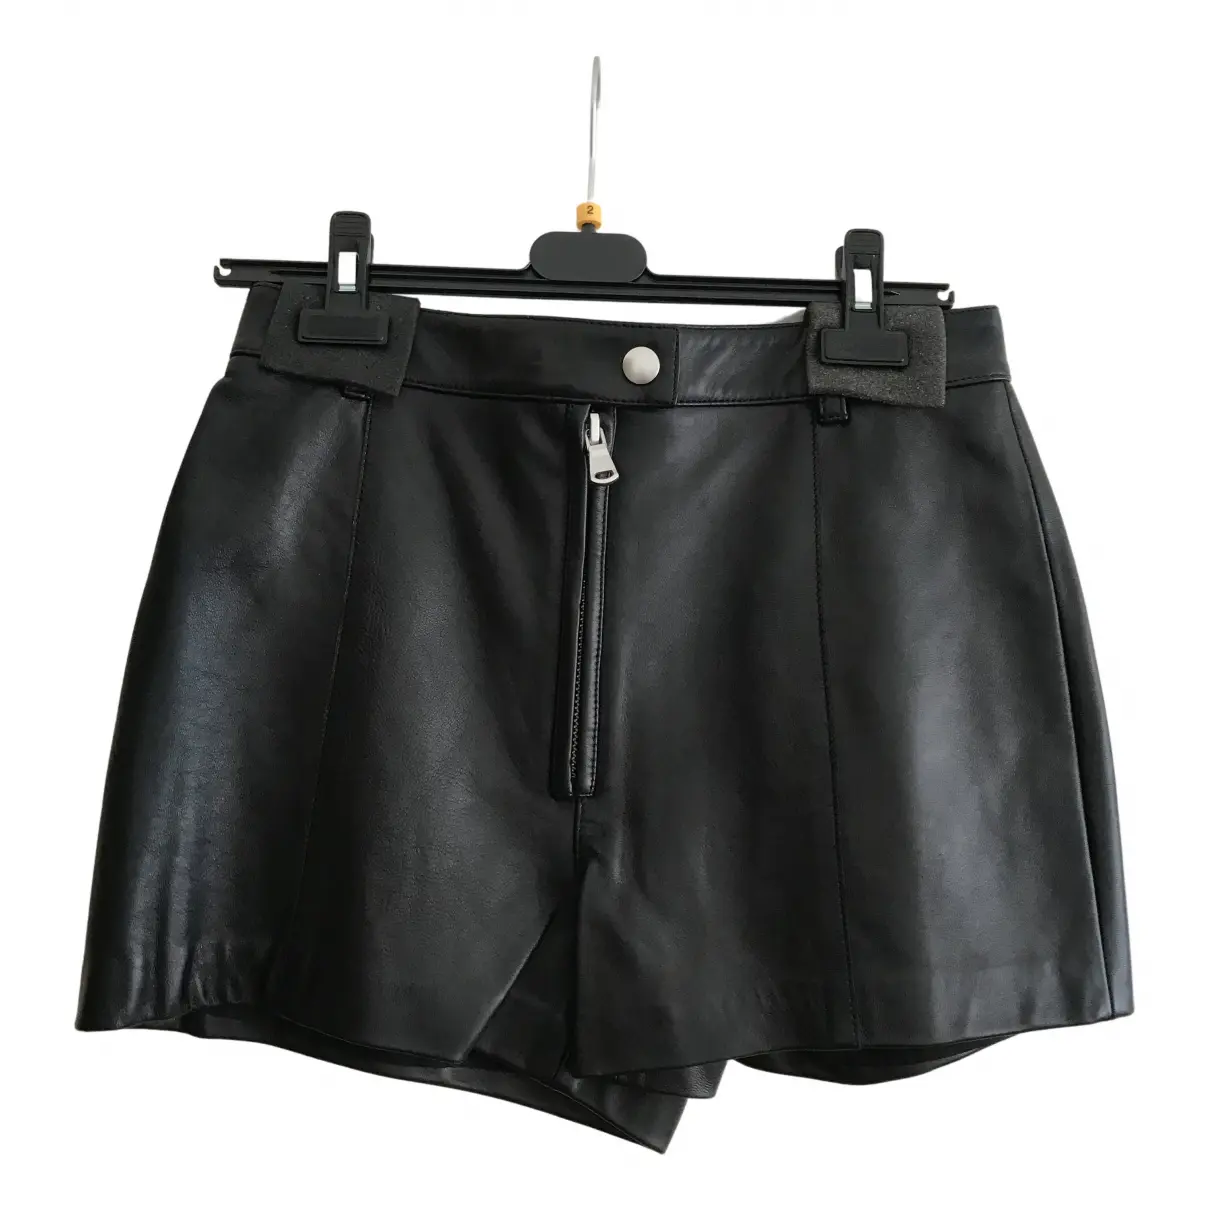 Leather mini short 3.1 Phillip Lim